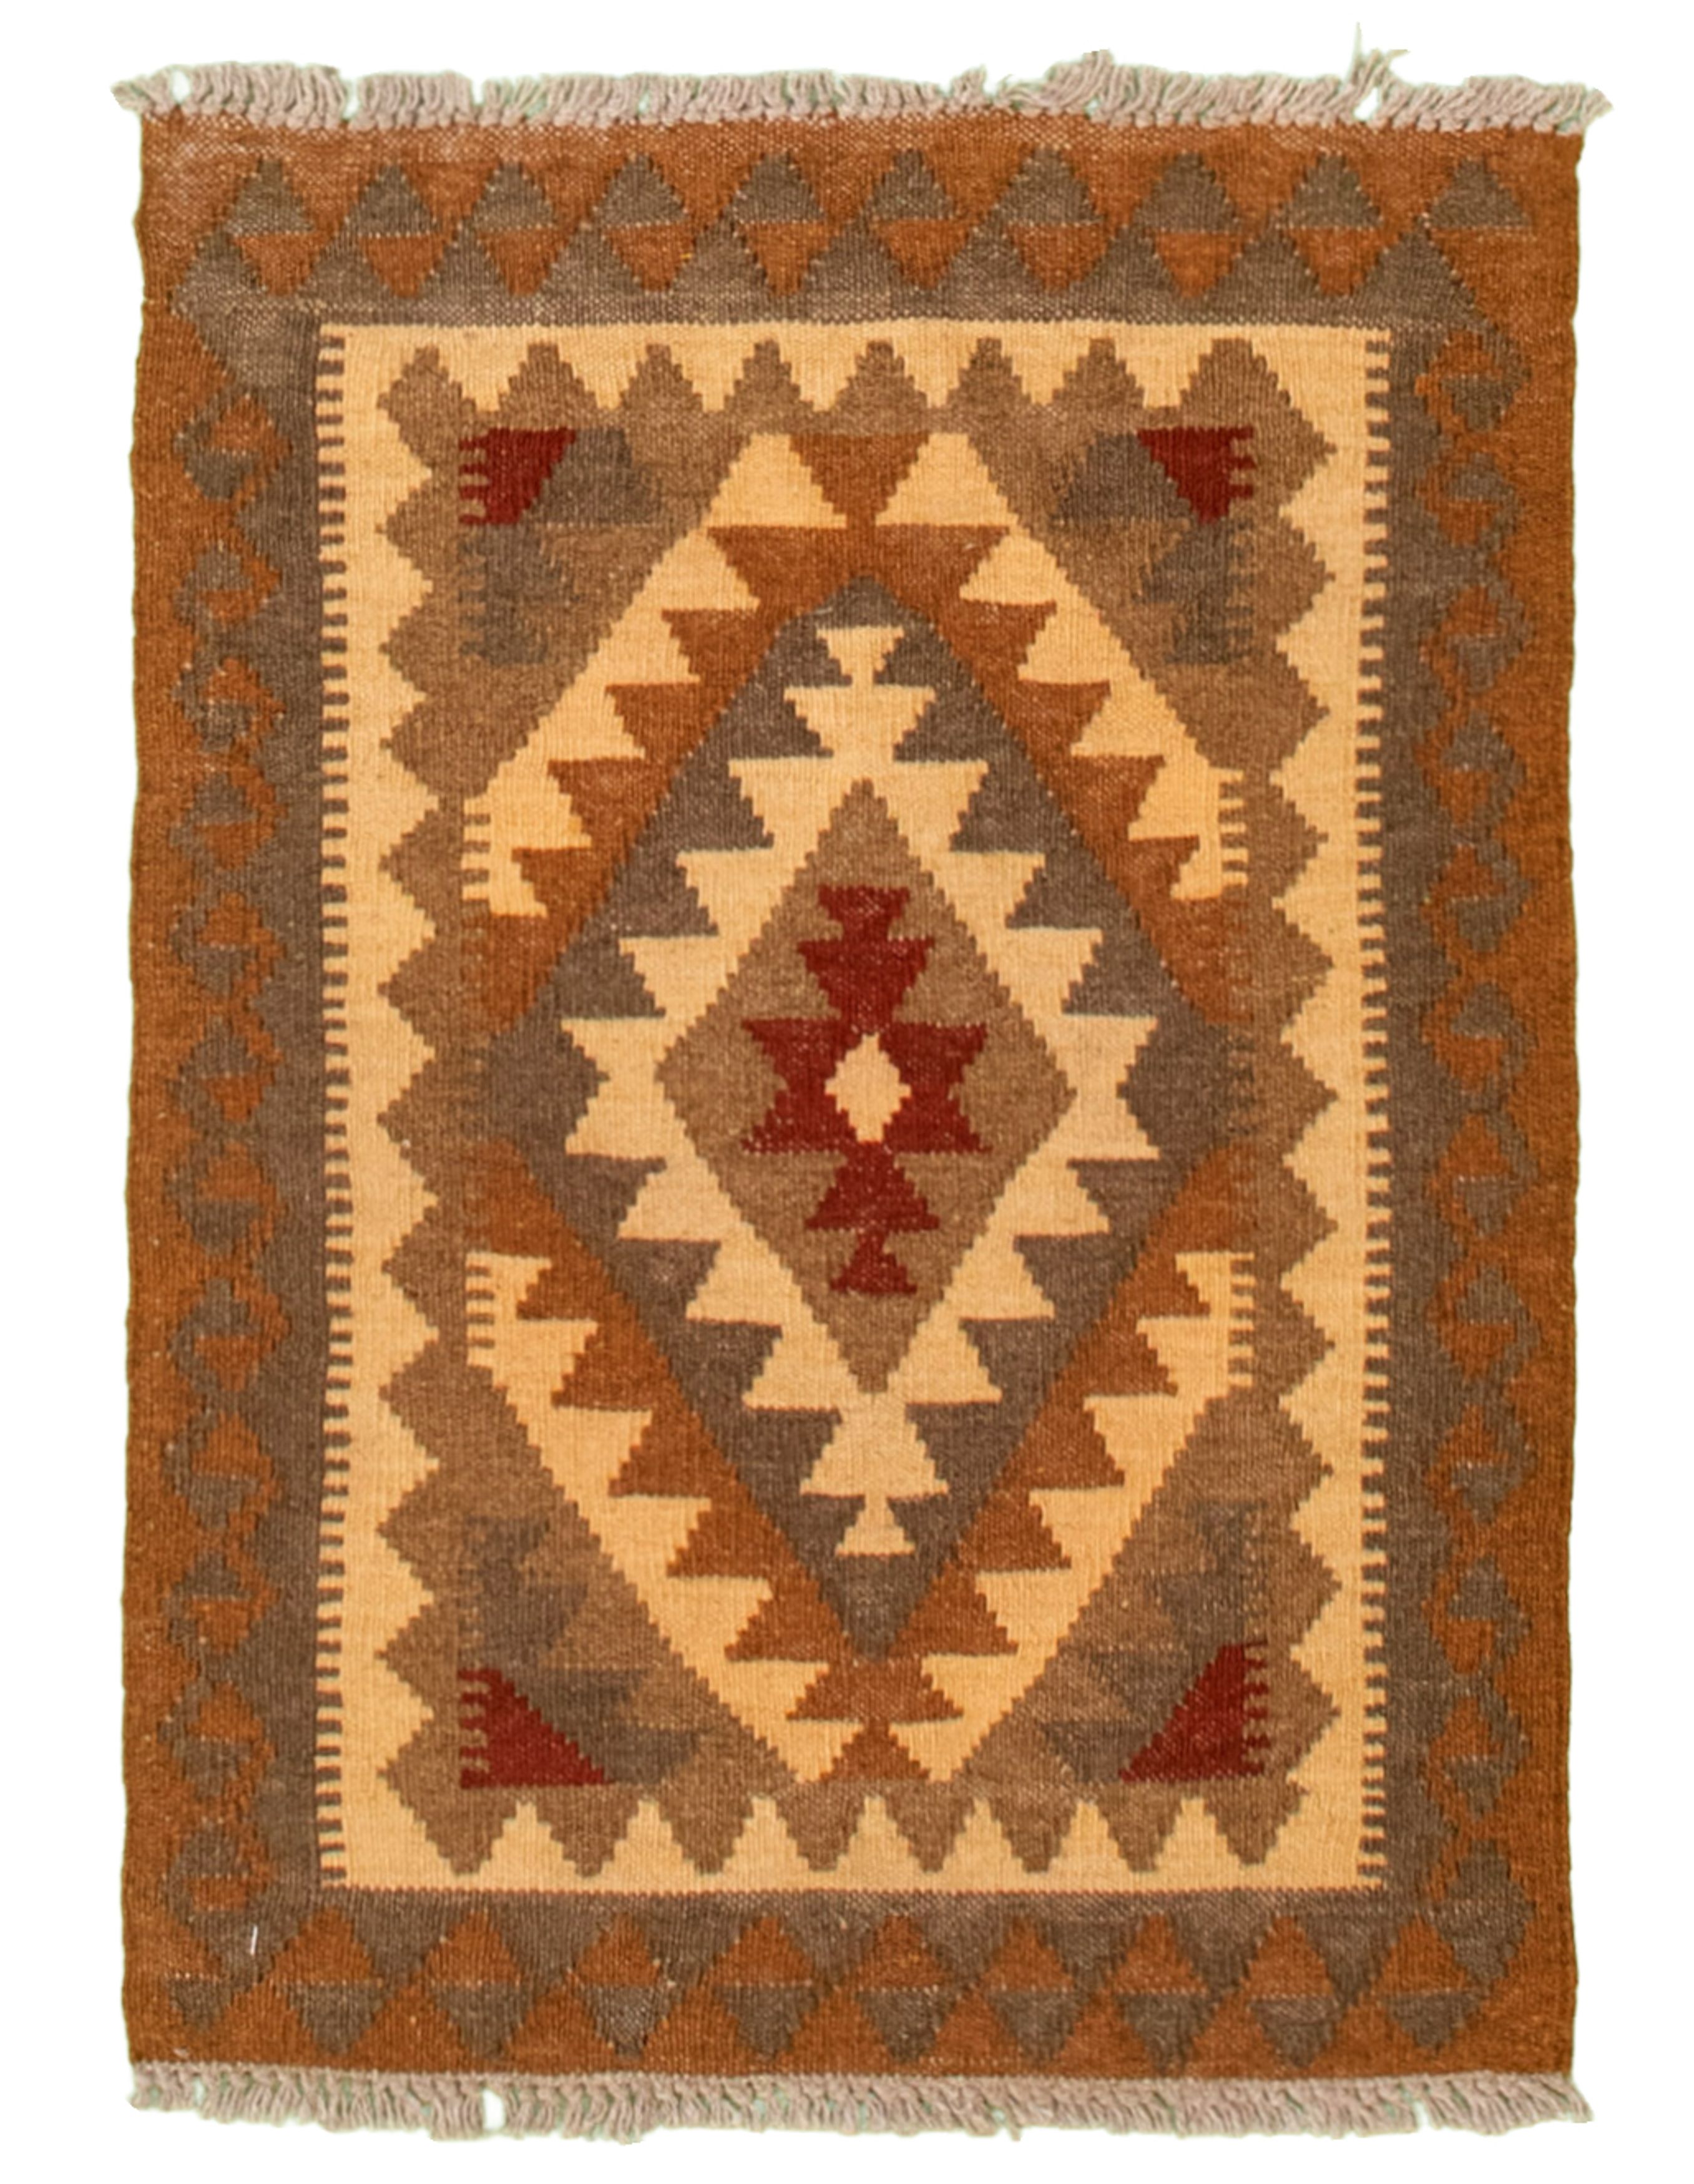 Hand woven Kashkoli FW Brown, Cream Cotton Kilim 1'11" x 2'9" Size: 1'11" x 2'9"  